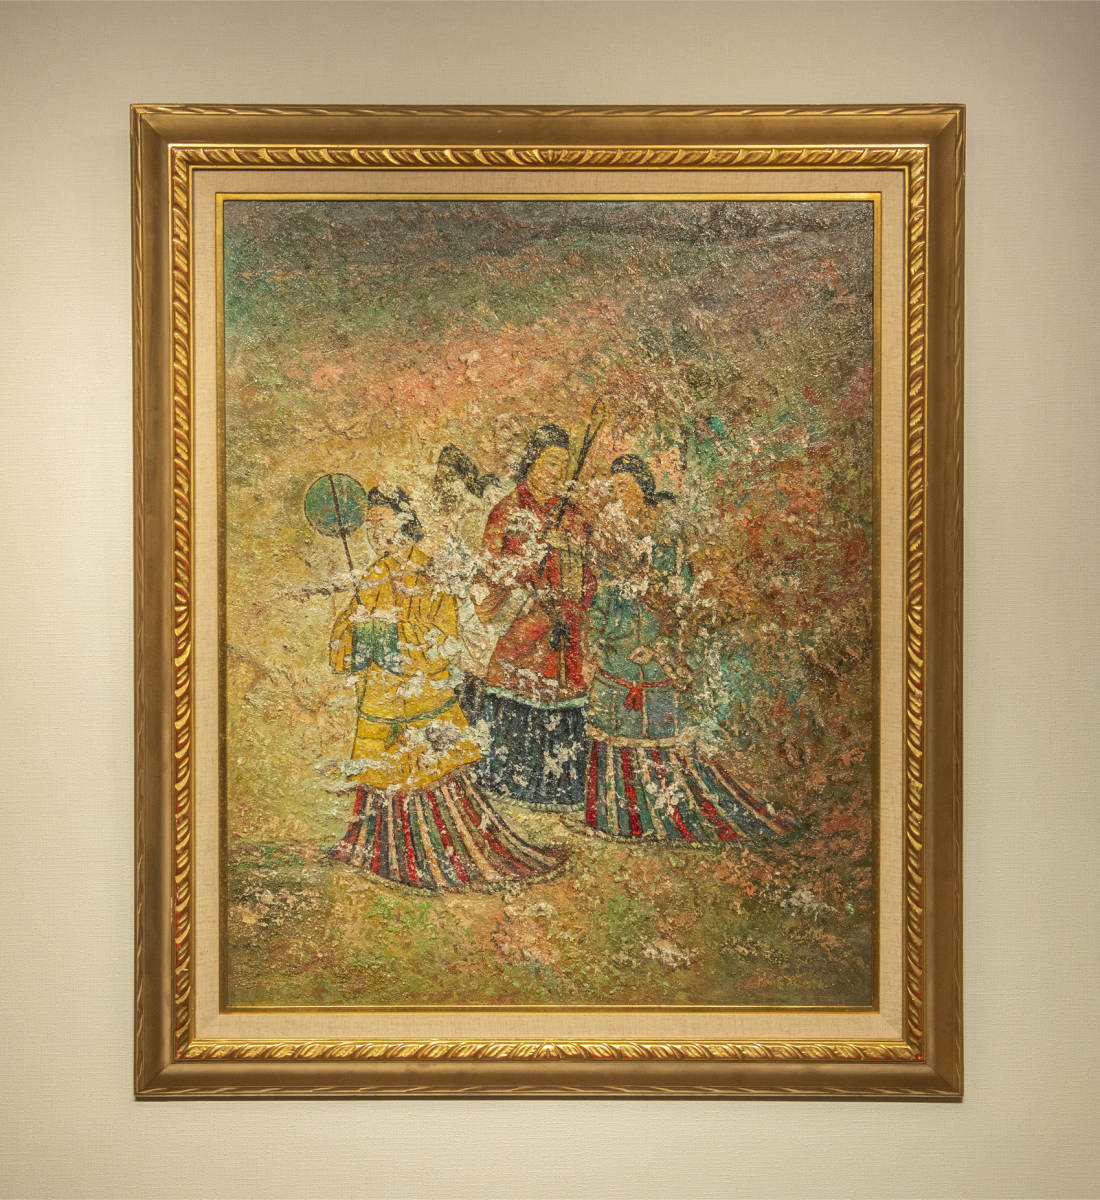 [Reproduktion] Maid von Jeun Jin Ölgemälde gerahmt koreanische Malerei zeitgenössische Kunst, Malerei, Ölgemälde, Porträts